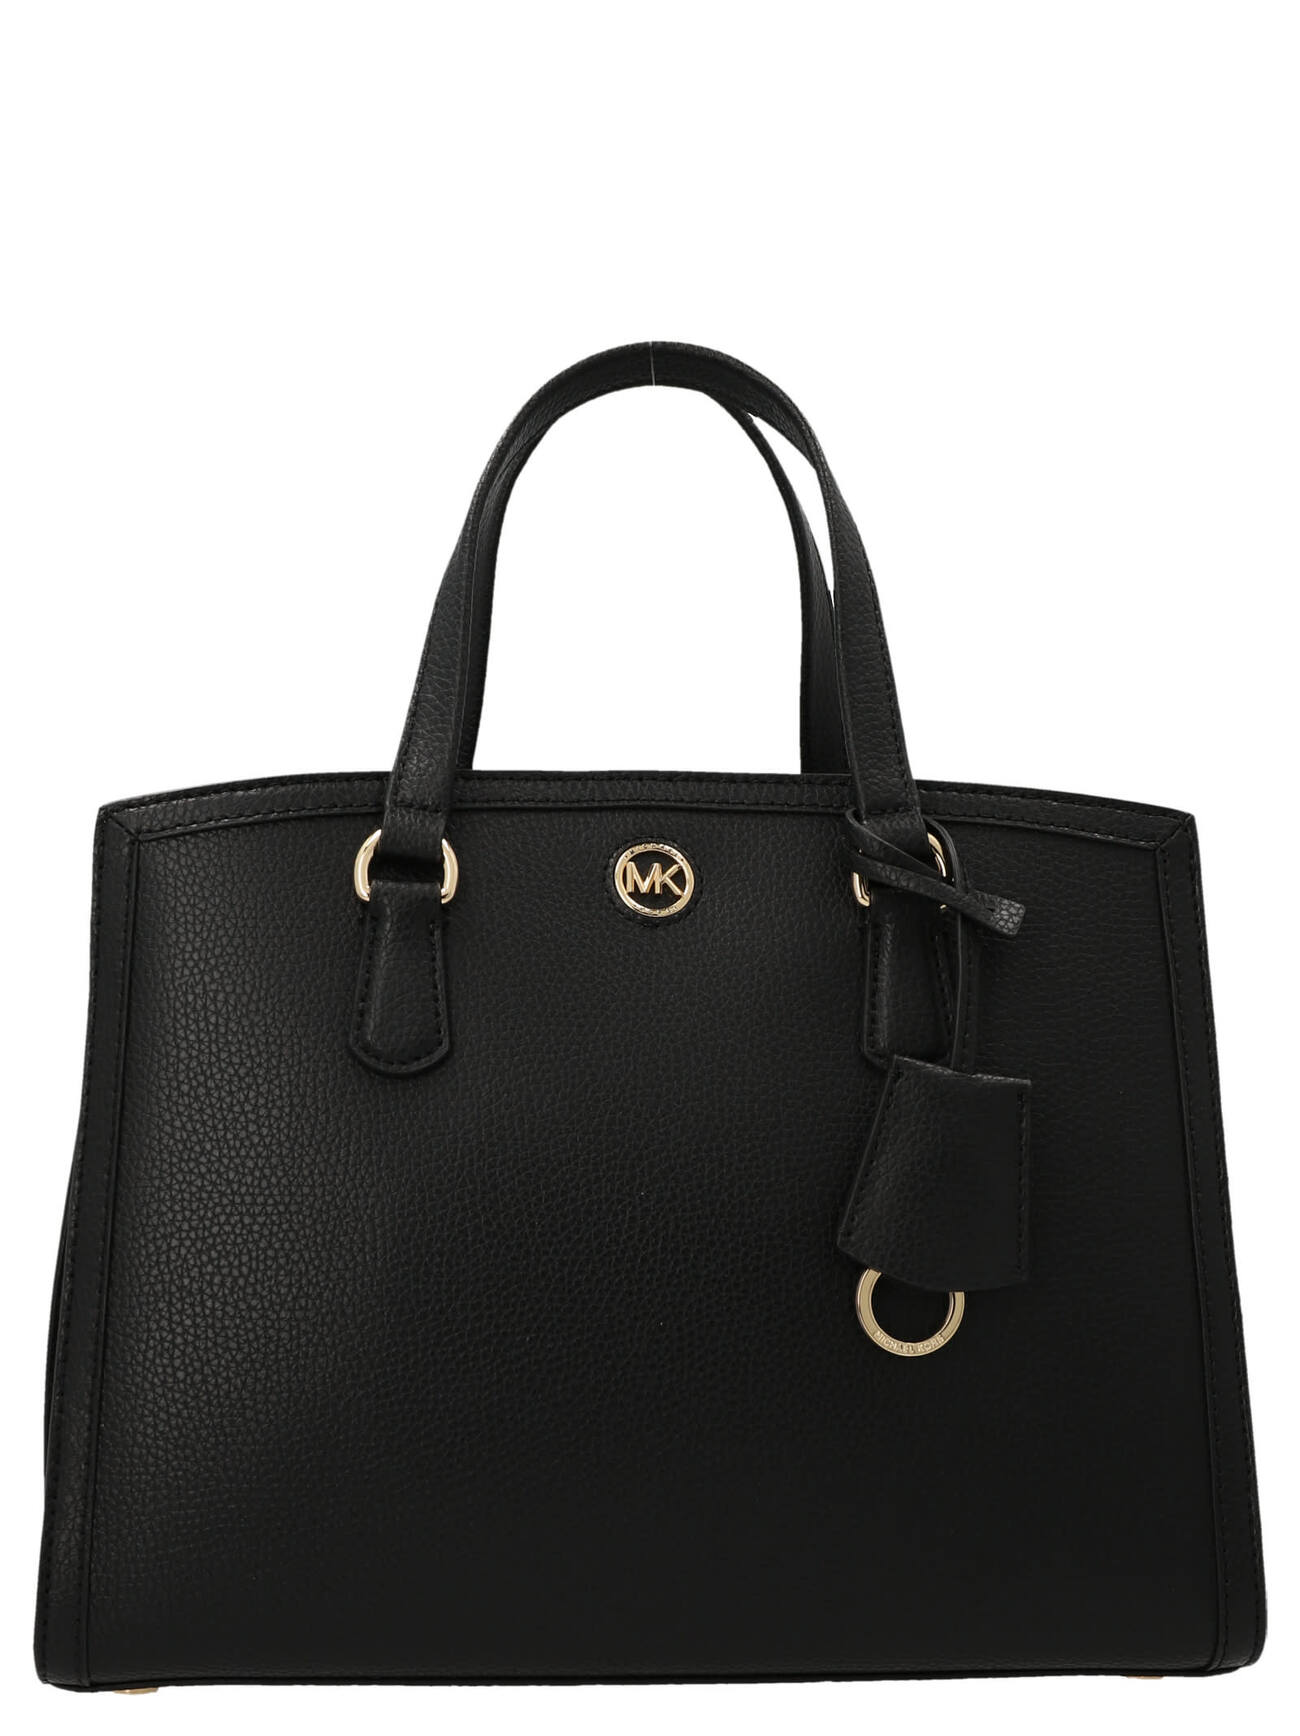 Michael Kors crocal Handbag in black